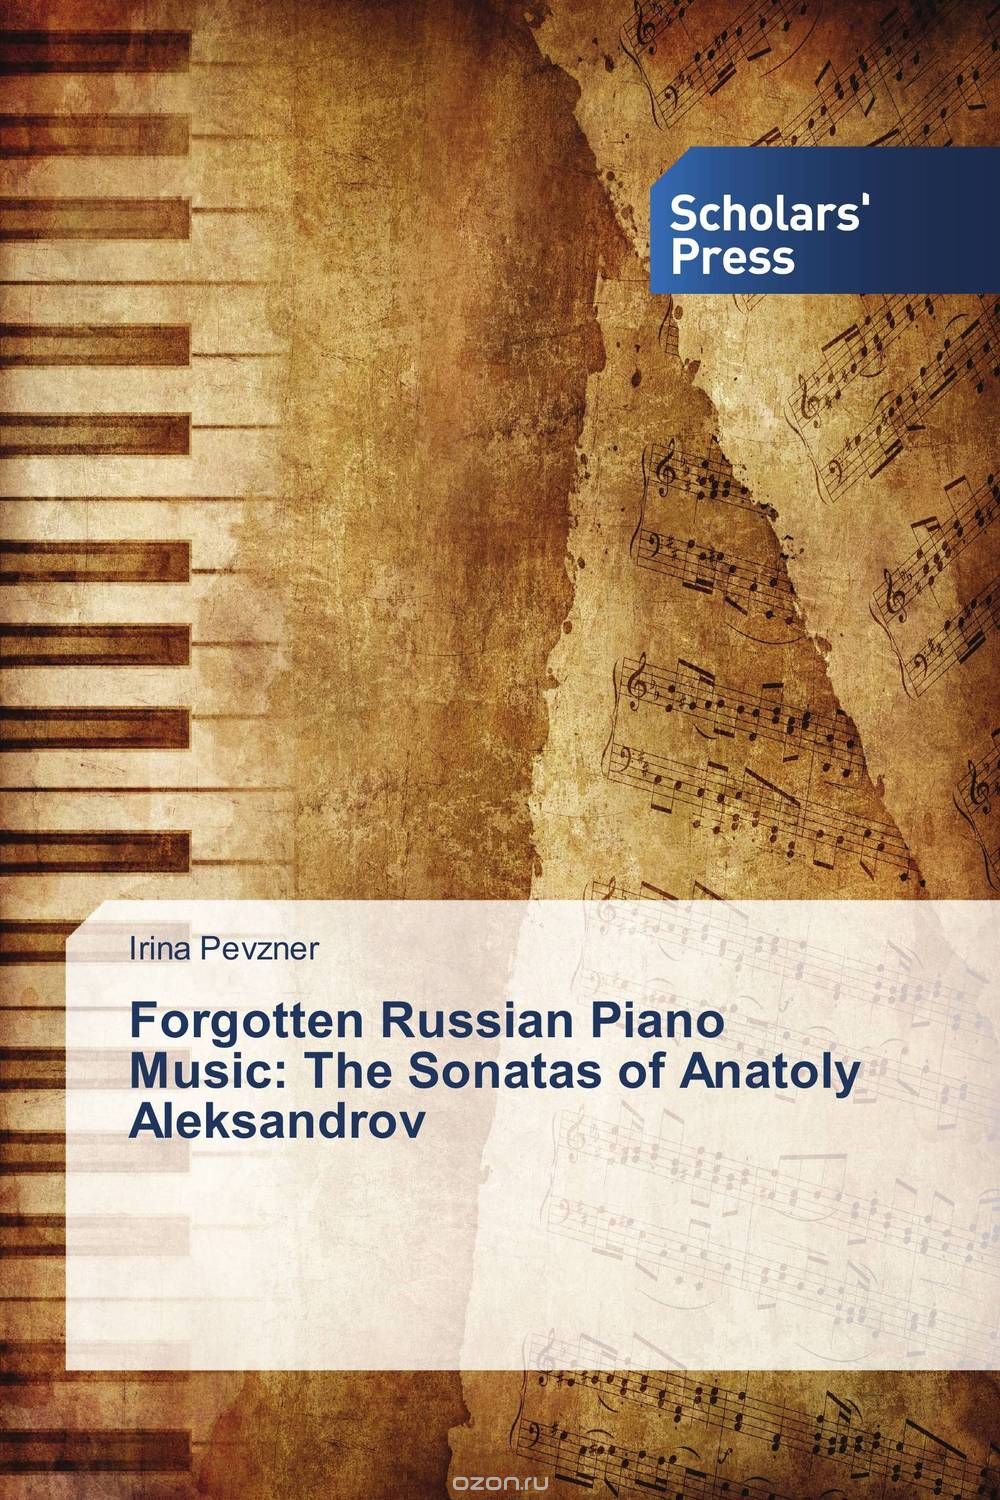 Скачать книгу "Forgotten Russian Piano Music: The Sonatas of Anatoly Aleksandrov"